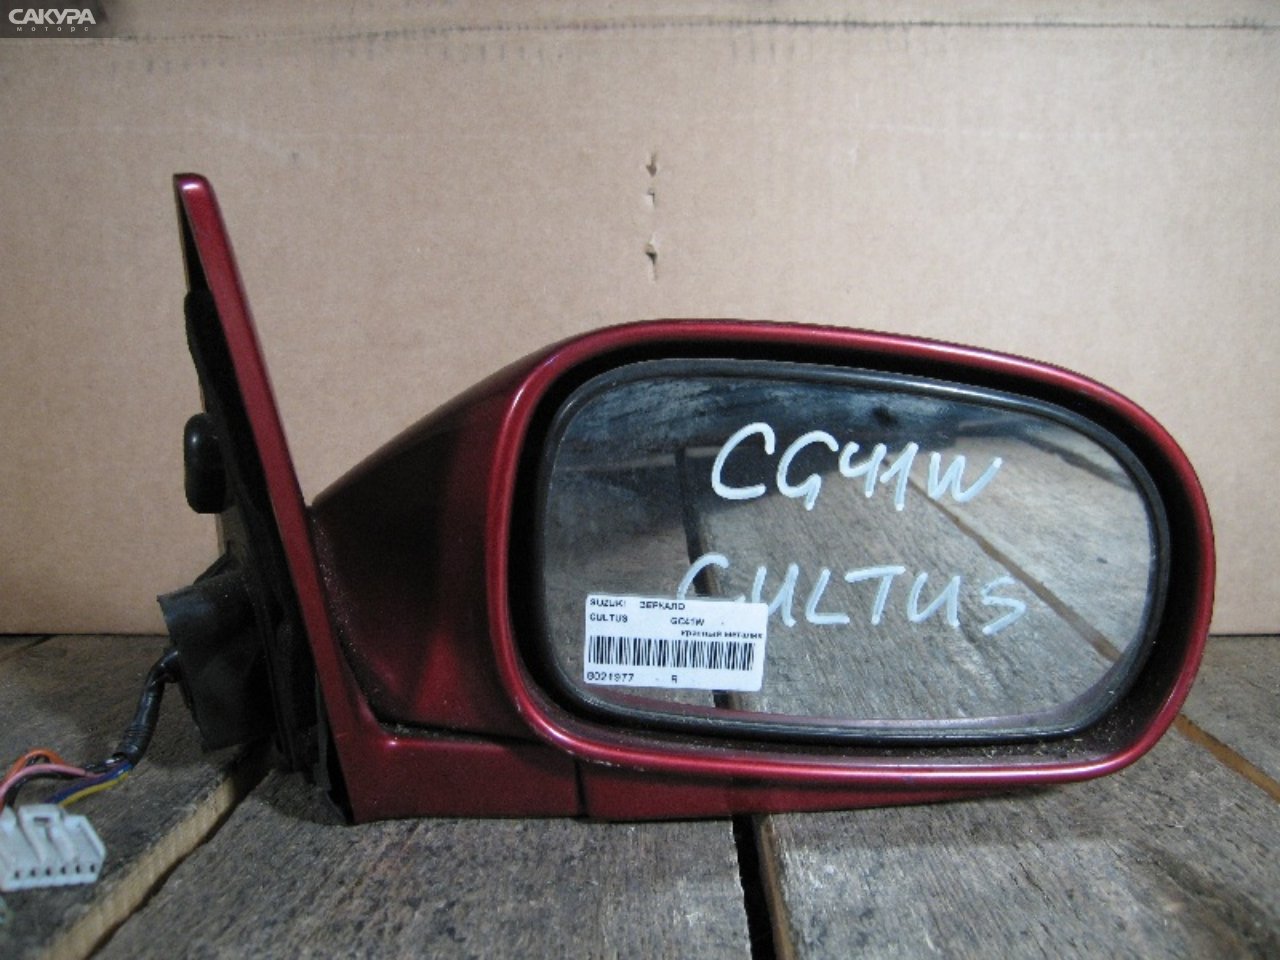 Зеркало боковое правое Suzuki Cultus GC41W: купить в Сакура Абакан.